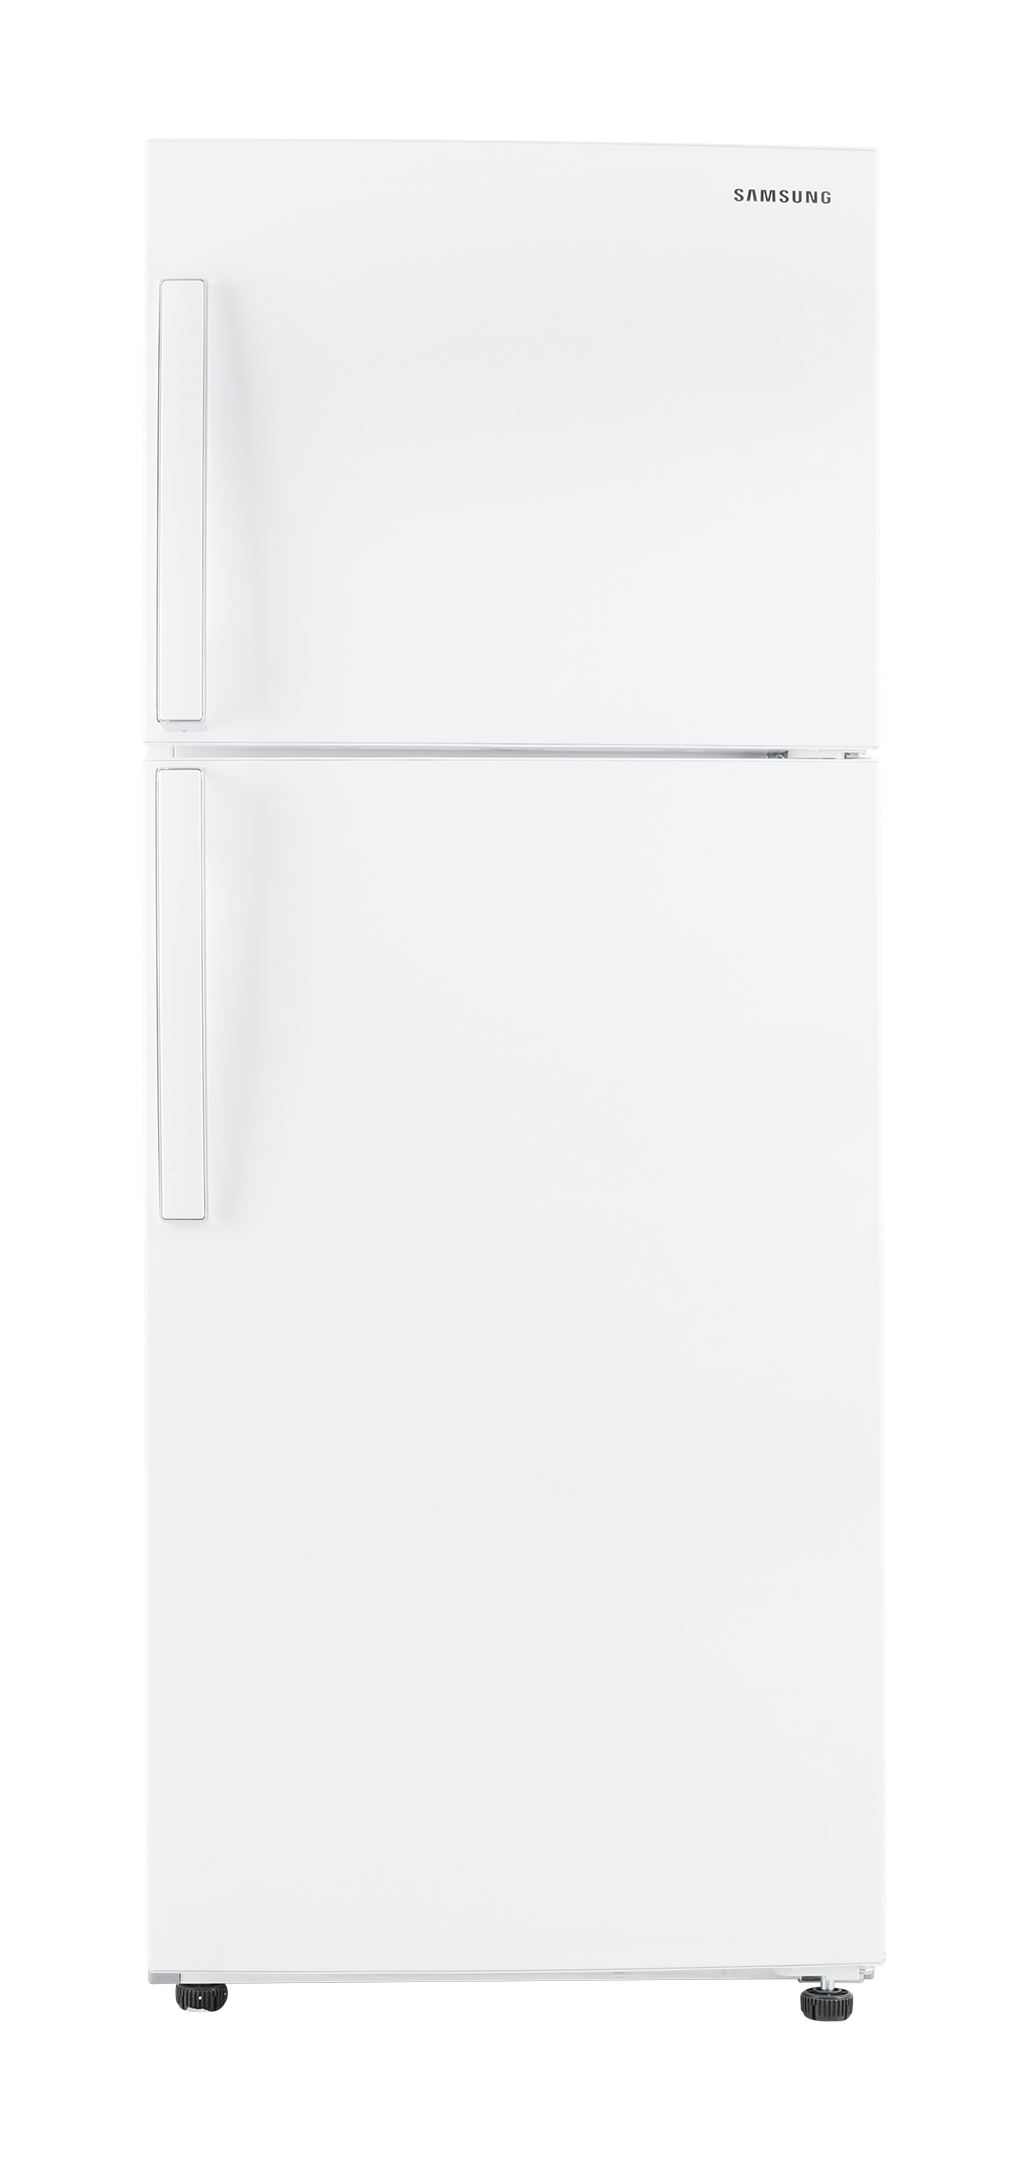 Buy Samsung Refrigerator, 12.7 Cu.ft, Snow White in Saudi Arabia